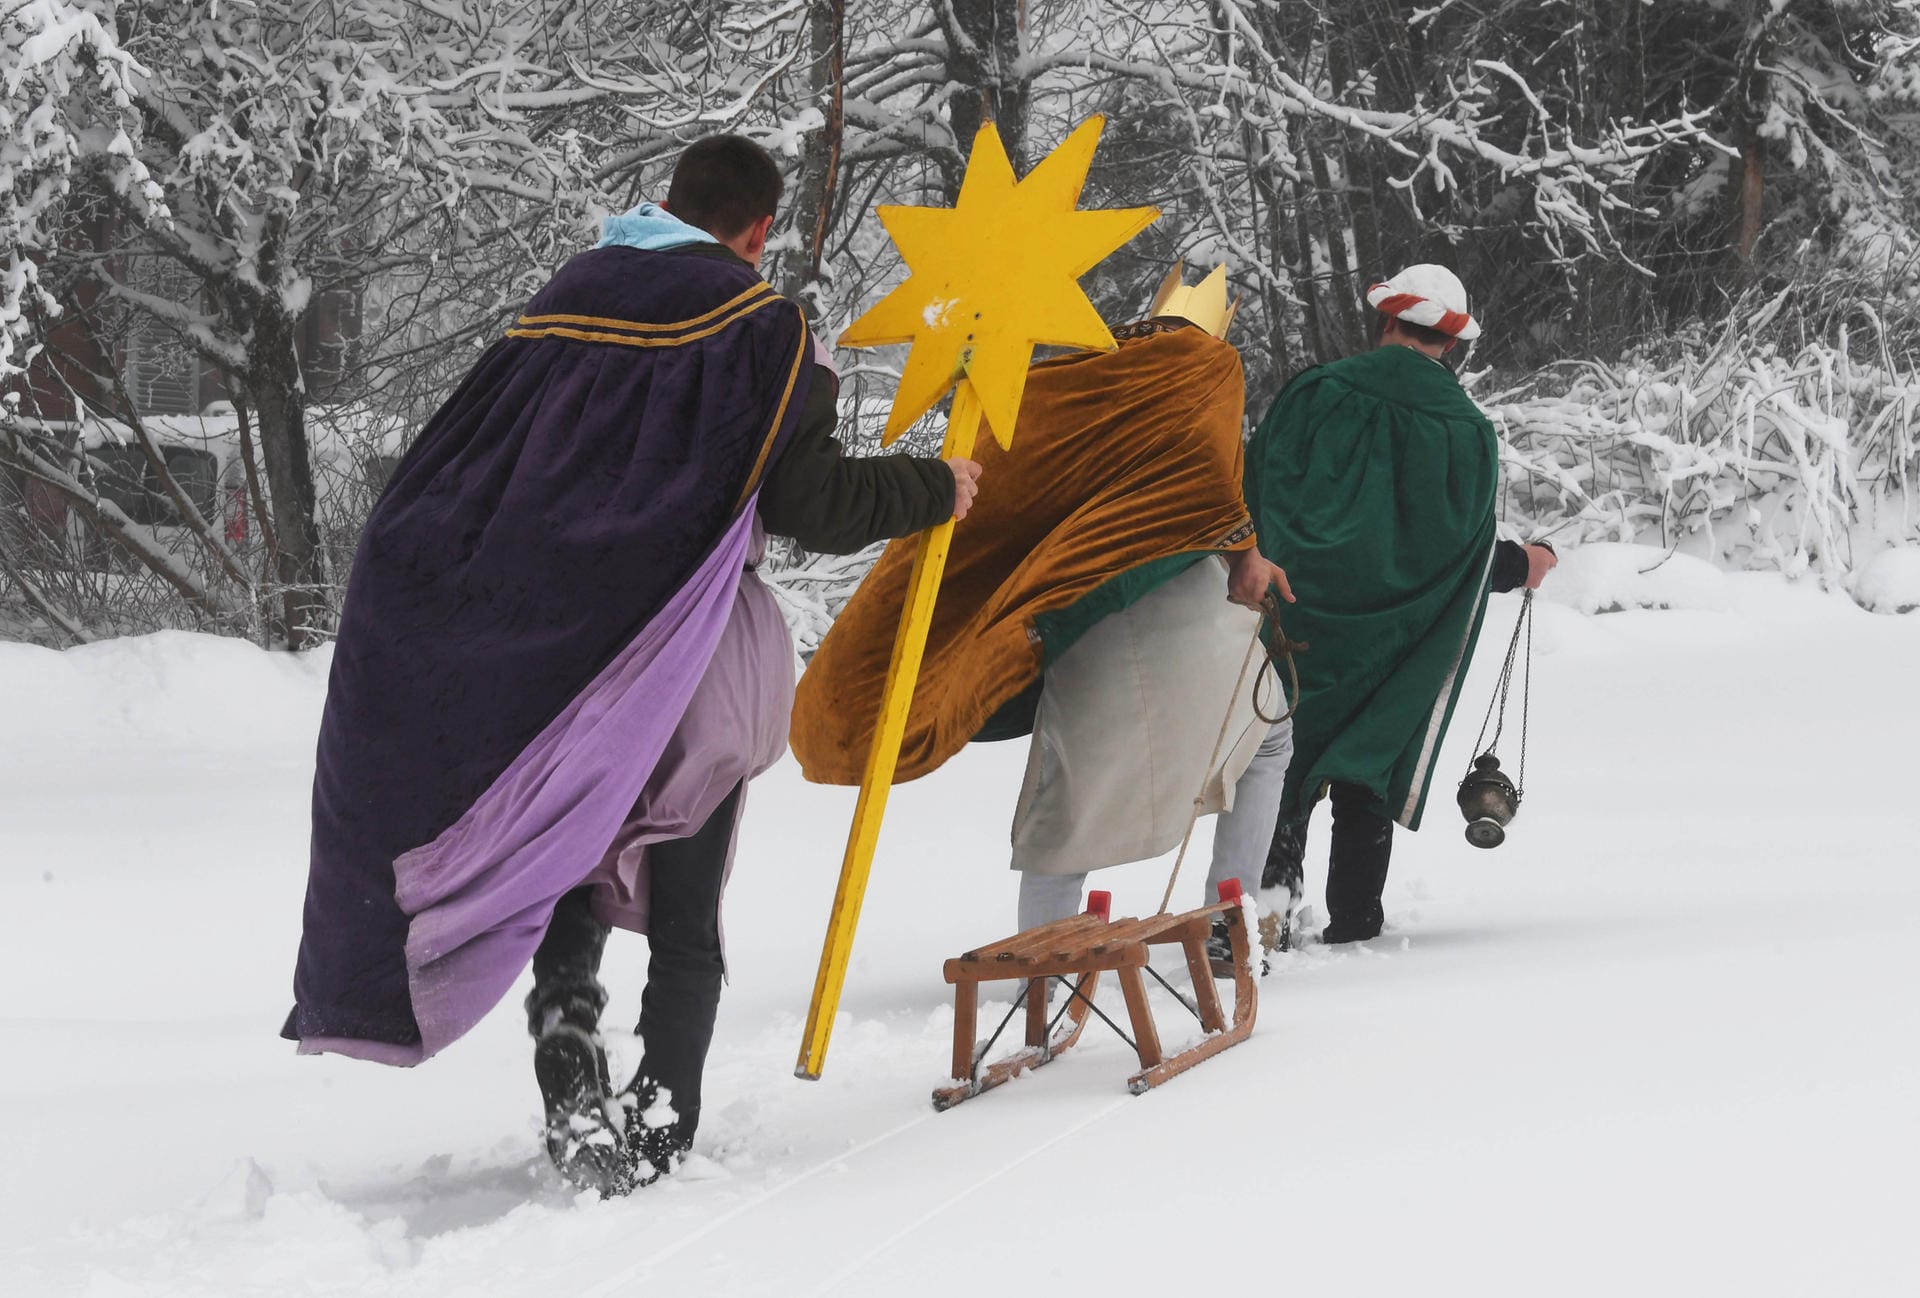 Auch in Baden-Württemberg gab es Schnee. In Seebach nutzten die Sternsinger an "Heilige Drei Könige" einen Schlitten.